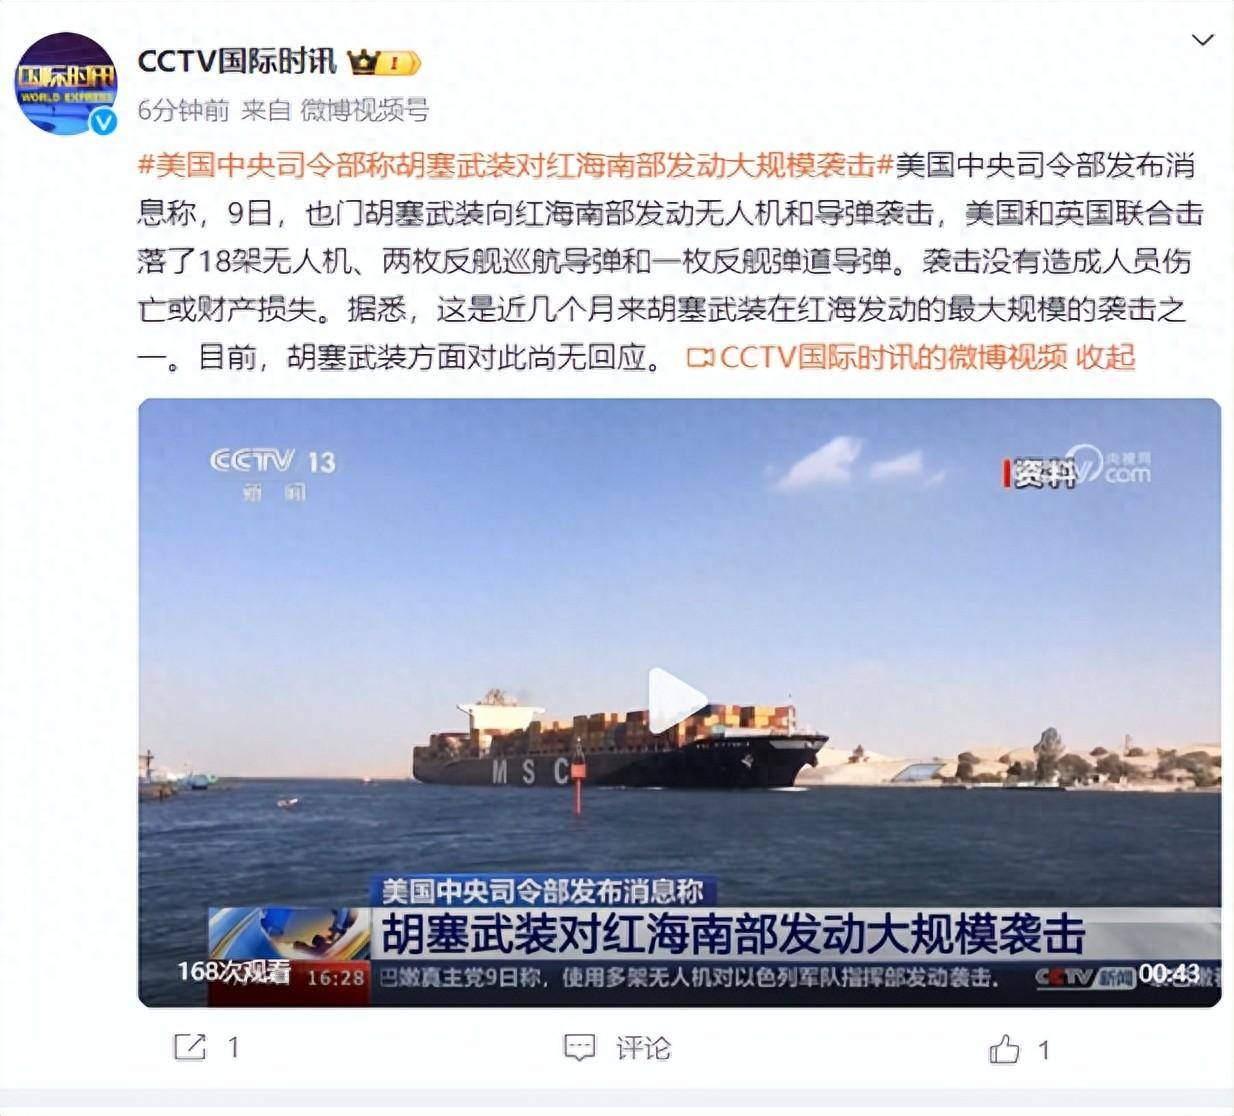 胡塞武装袭击外国商船 美国称红海航运威胁升级 - 国际在线移动版